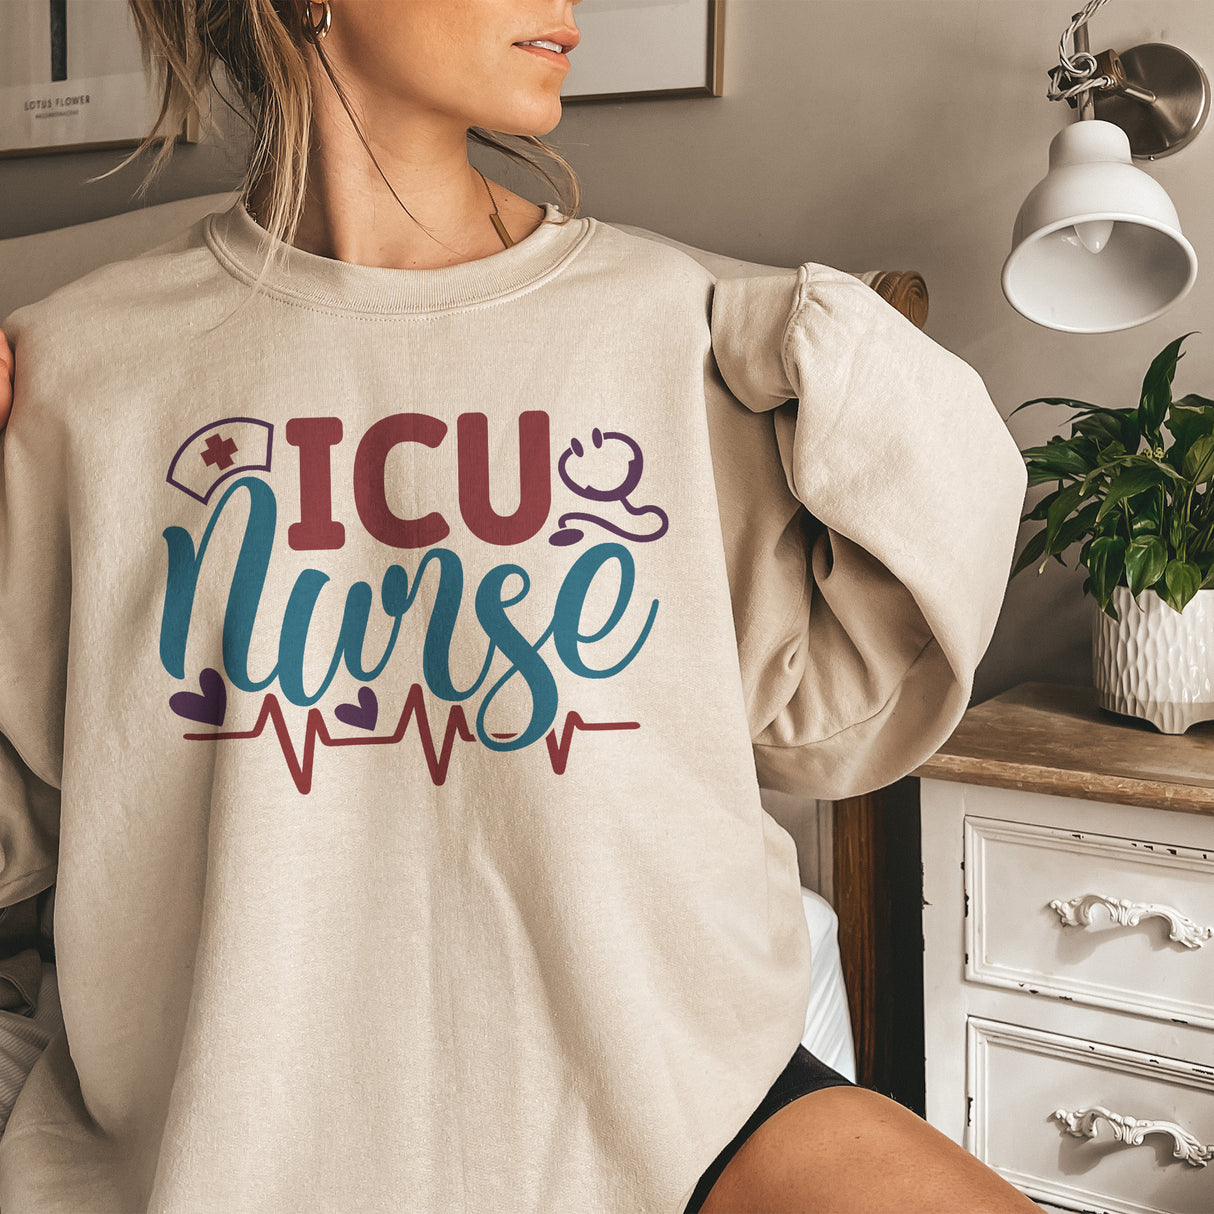 ICU Nurse Adult Sweatshirt